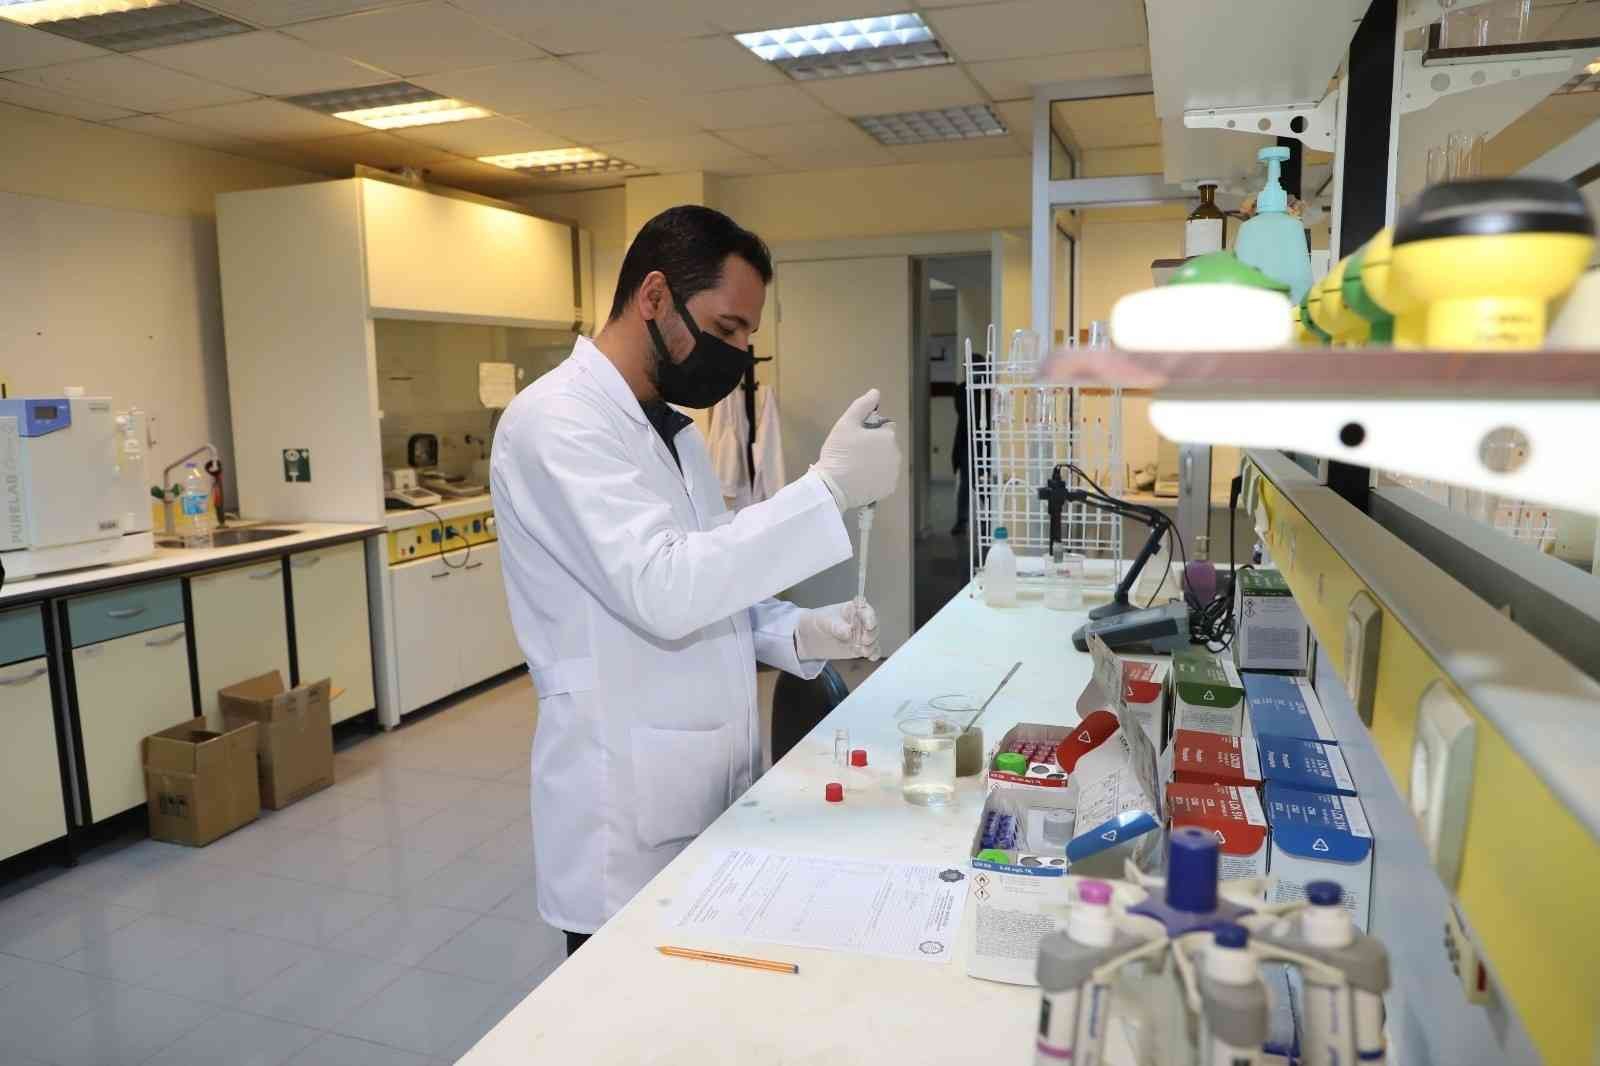 İleri Biyolojik Atıksu Arıtma Tesisi Laboratuvarı günlük 81 analiz yapıyor #diyarbakir